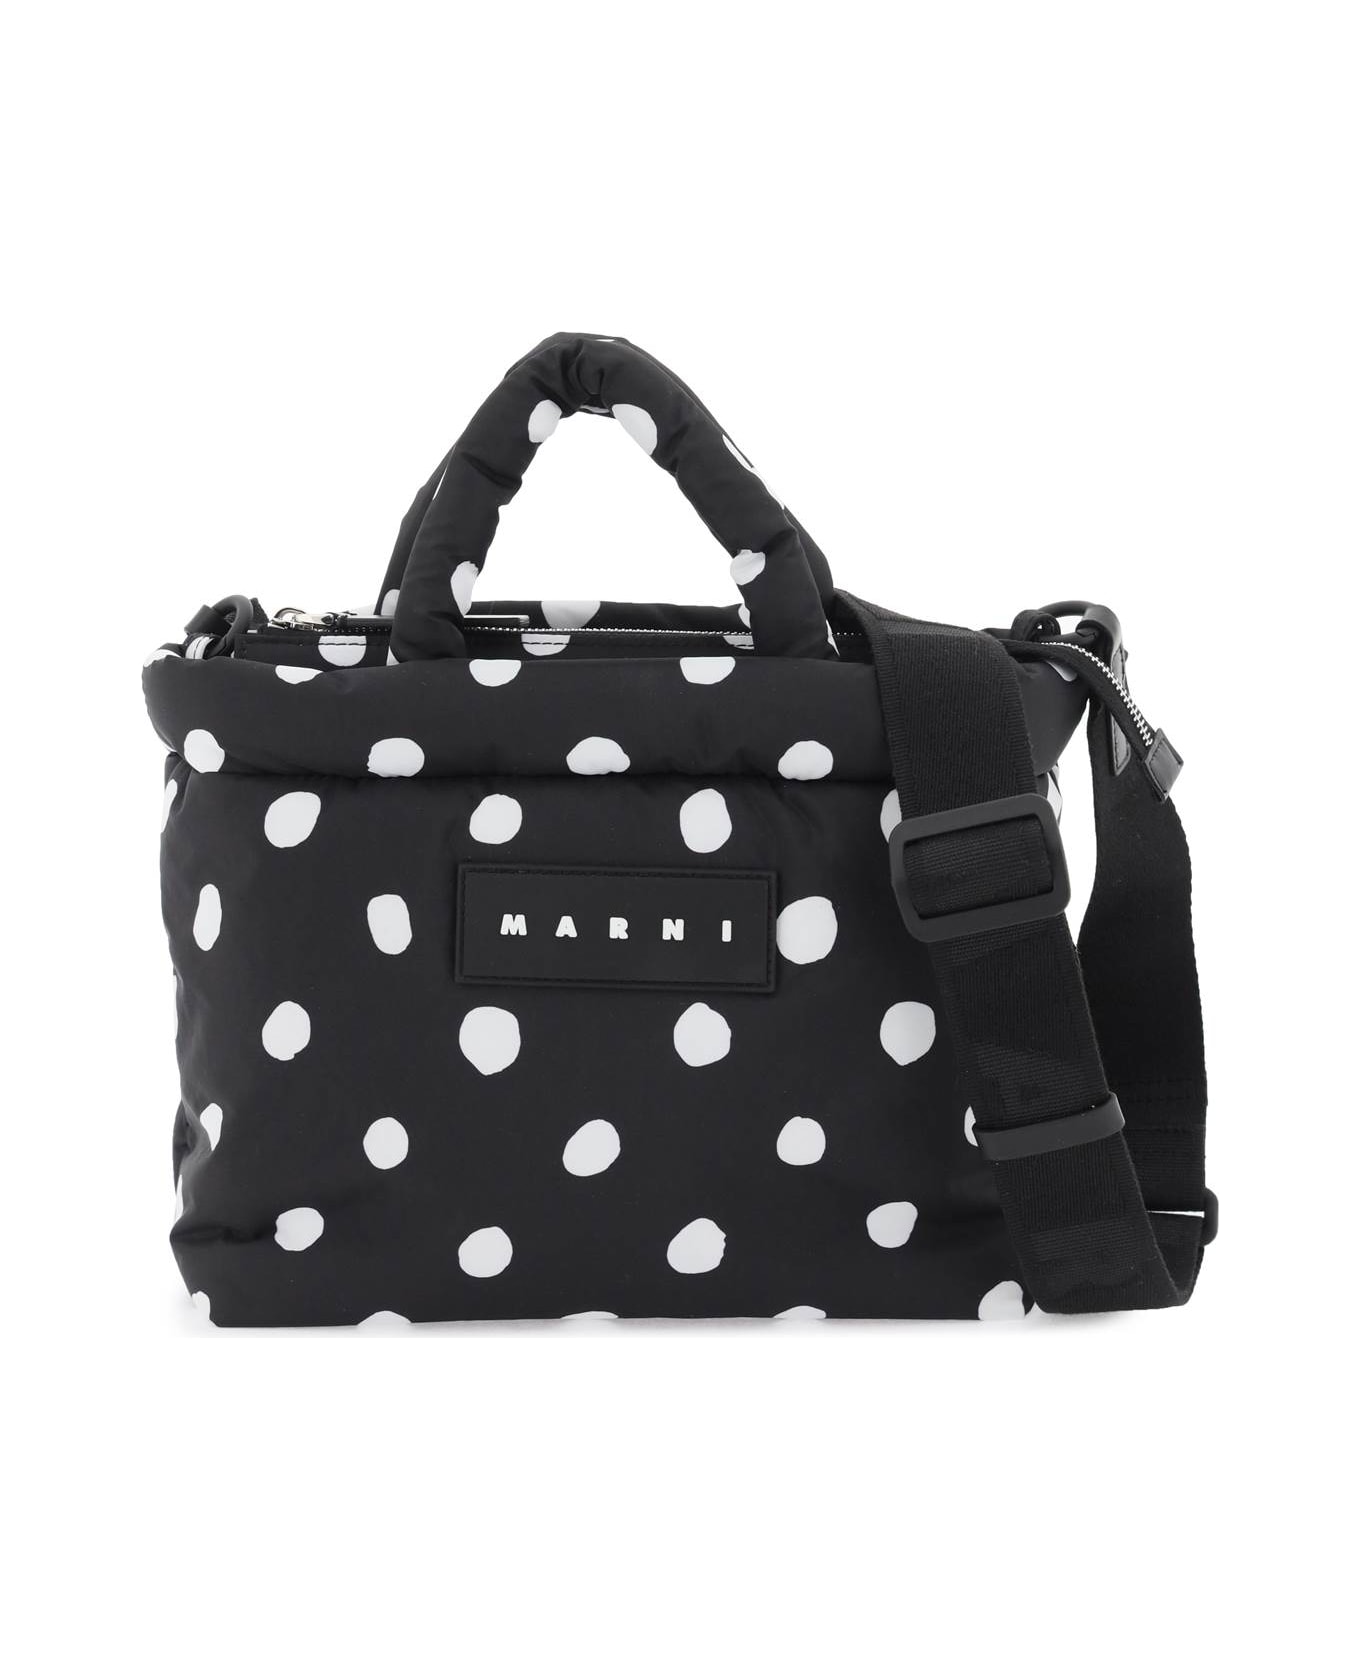 Marni Polka-dot Print Handbag - Black